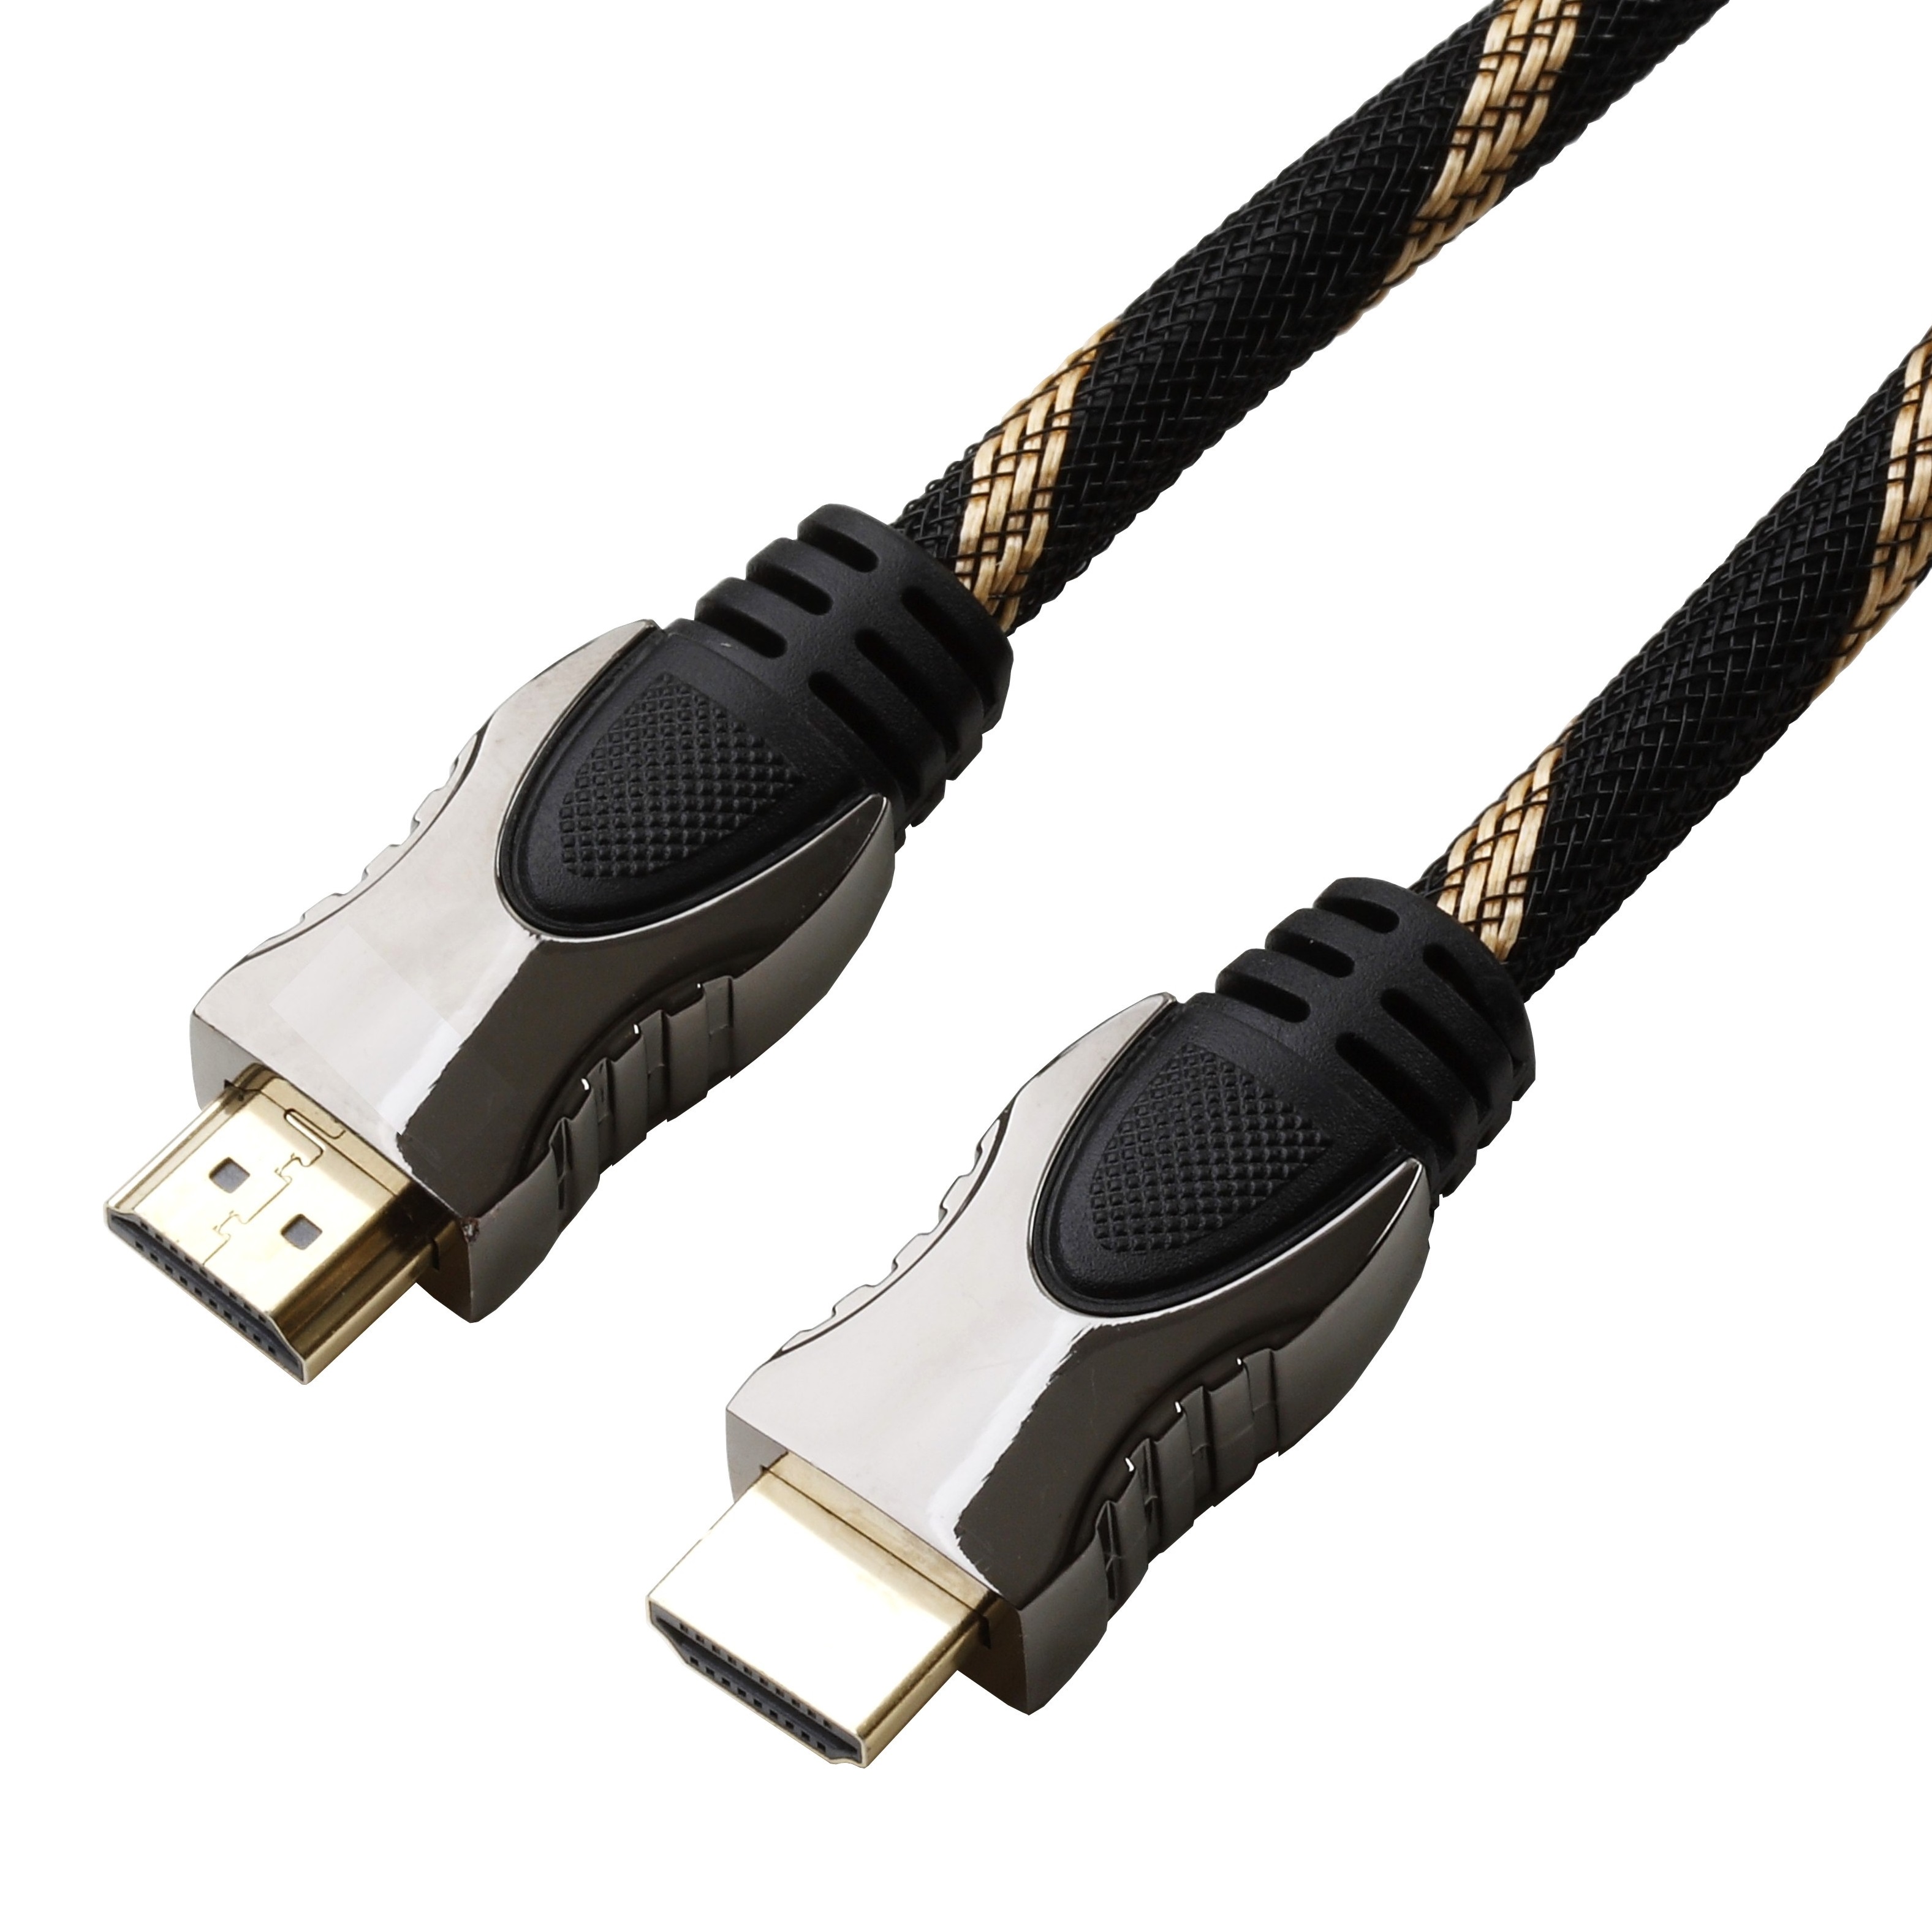 Reekin HDMI Kabel FULL HD 15,0 Meter NEU 1,33€/m High Speed with Ethernet 